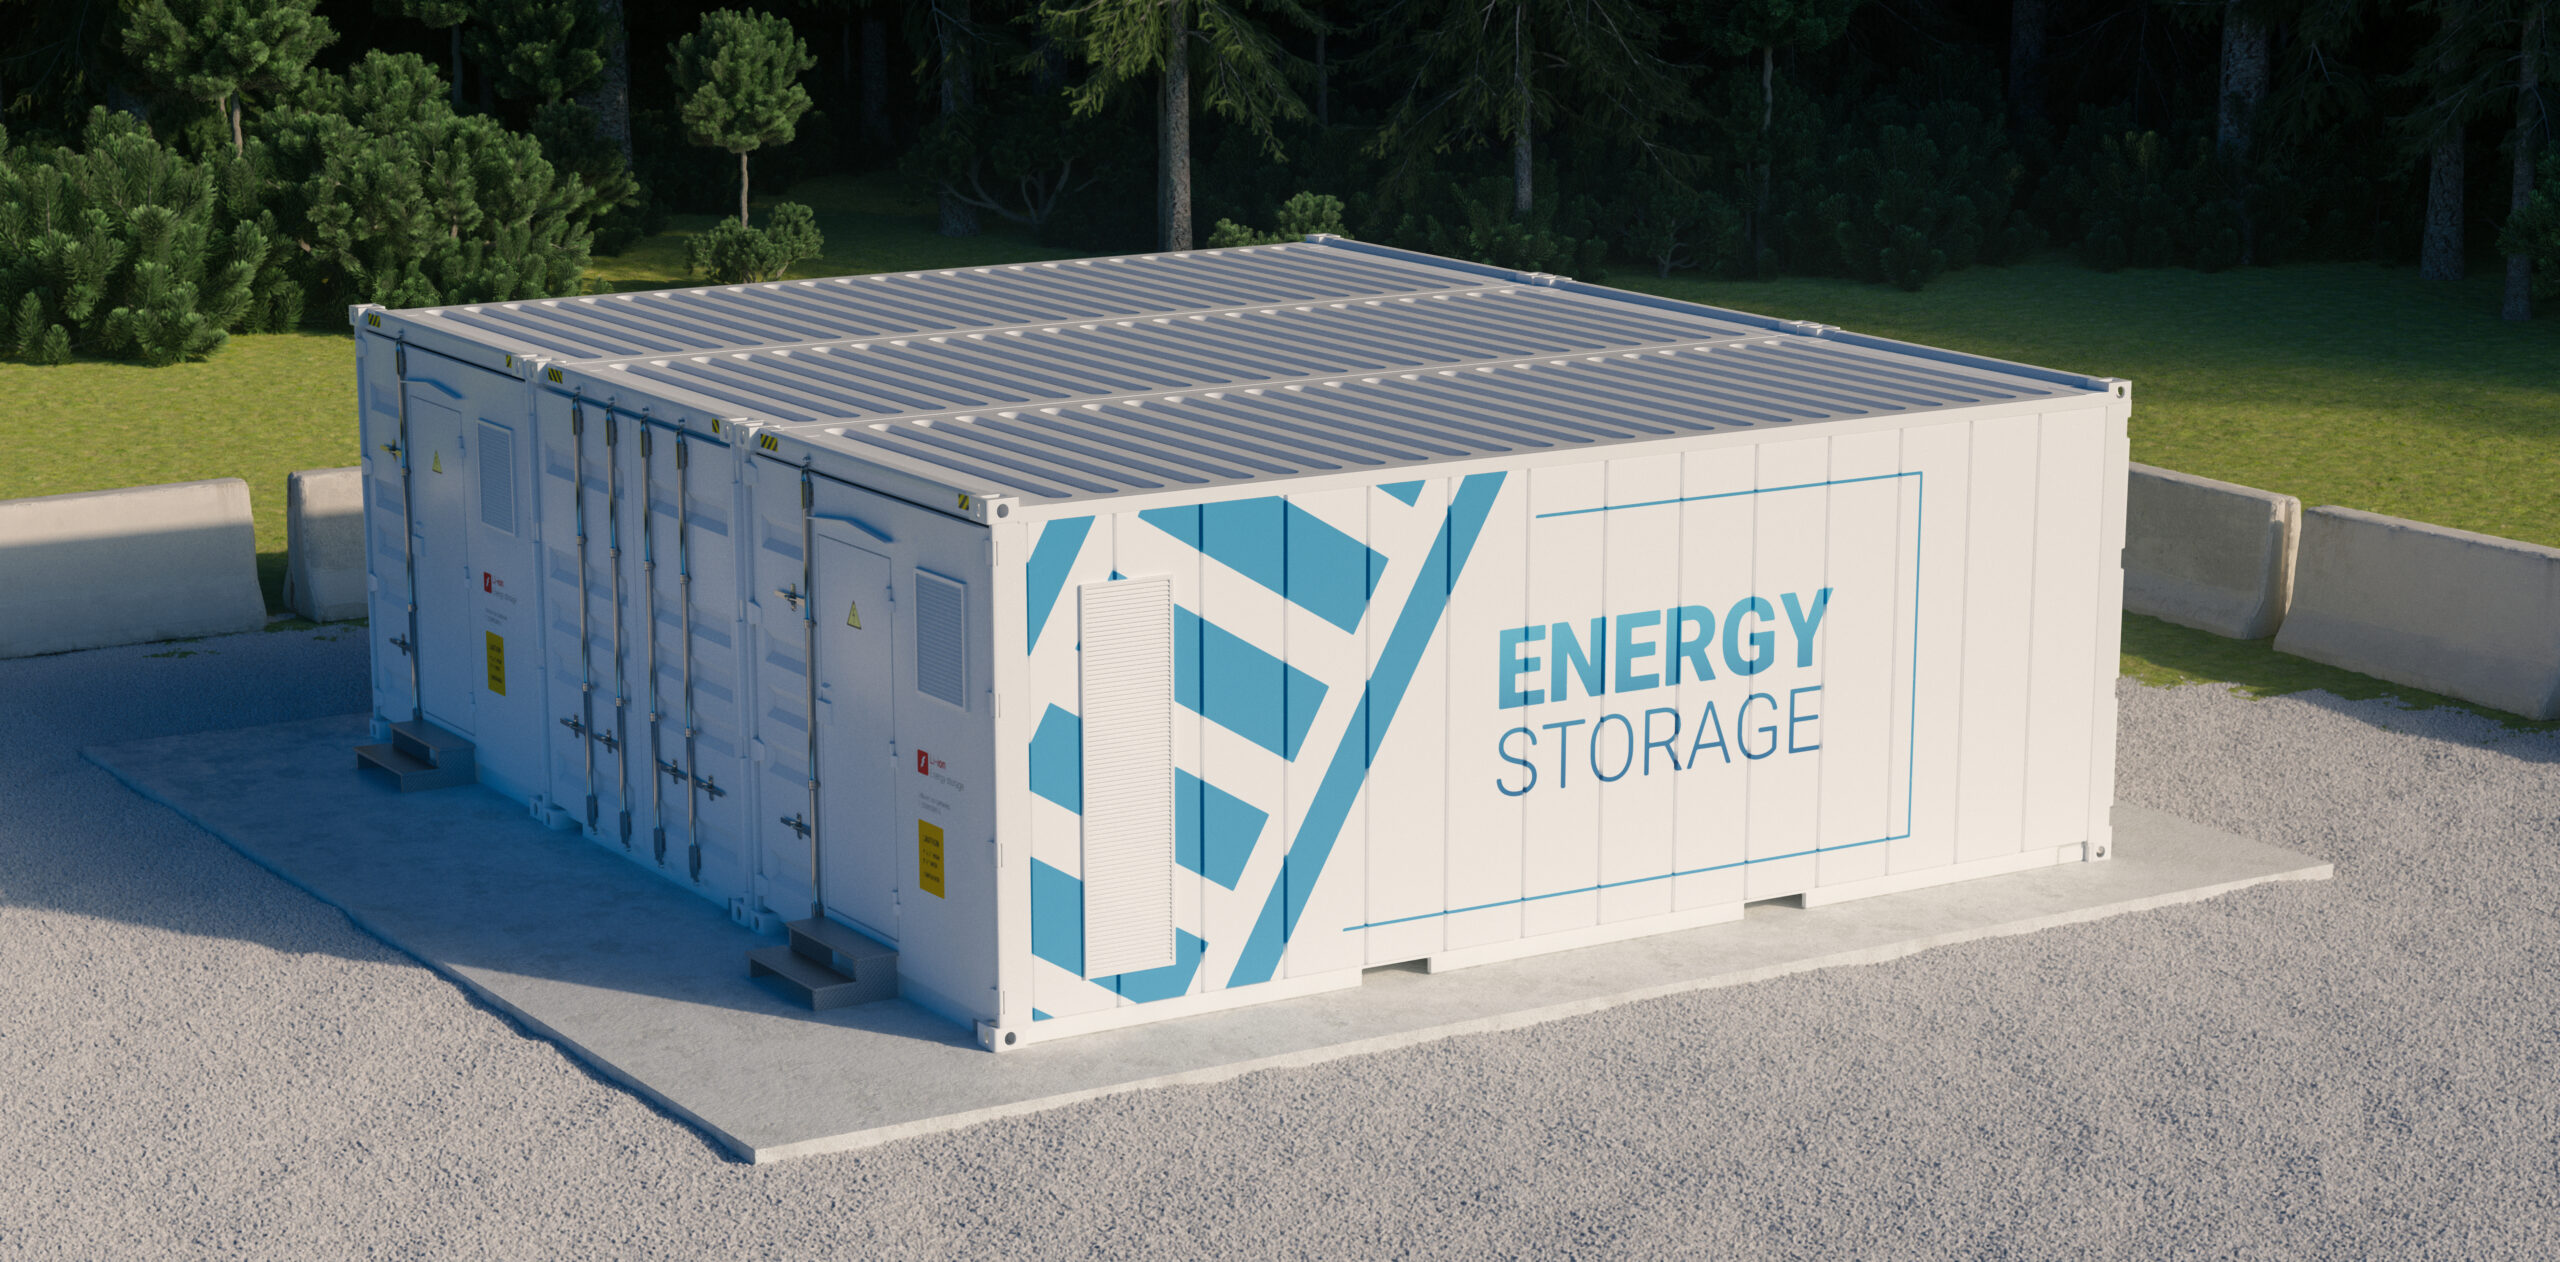 Energy storage